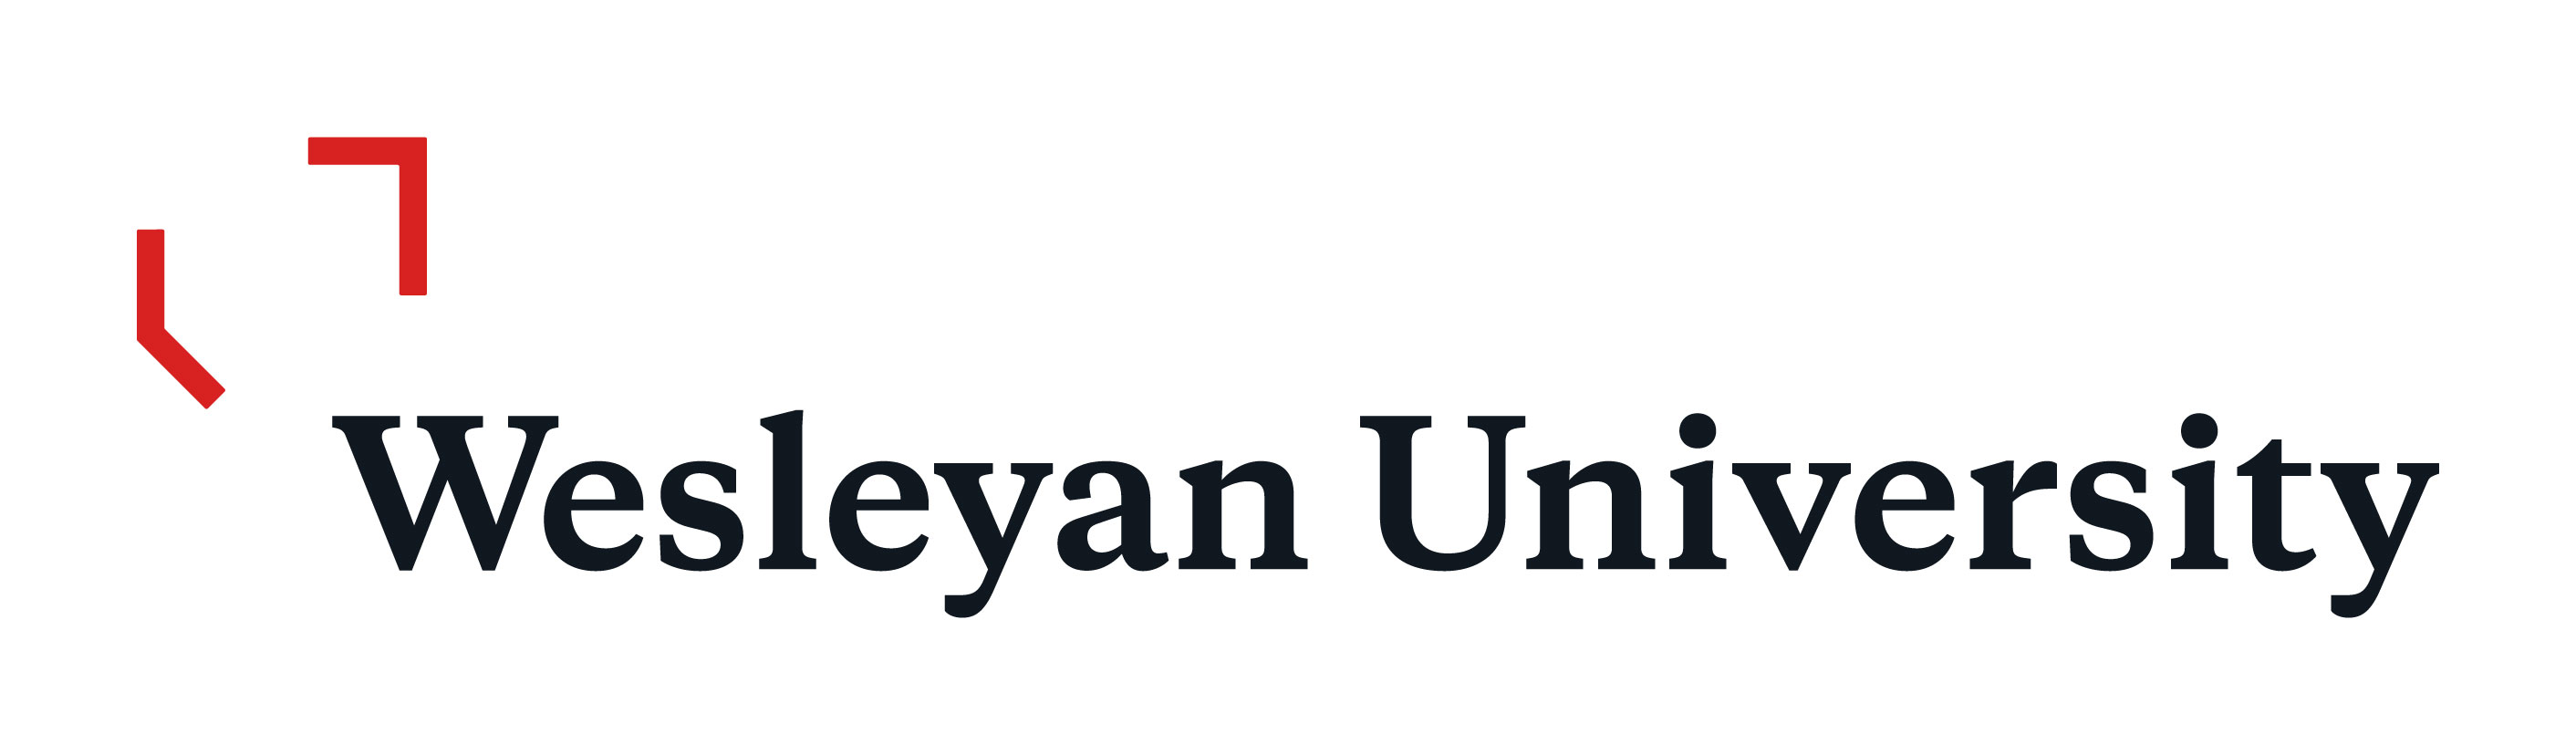 wesleyan university notable alumni